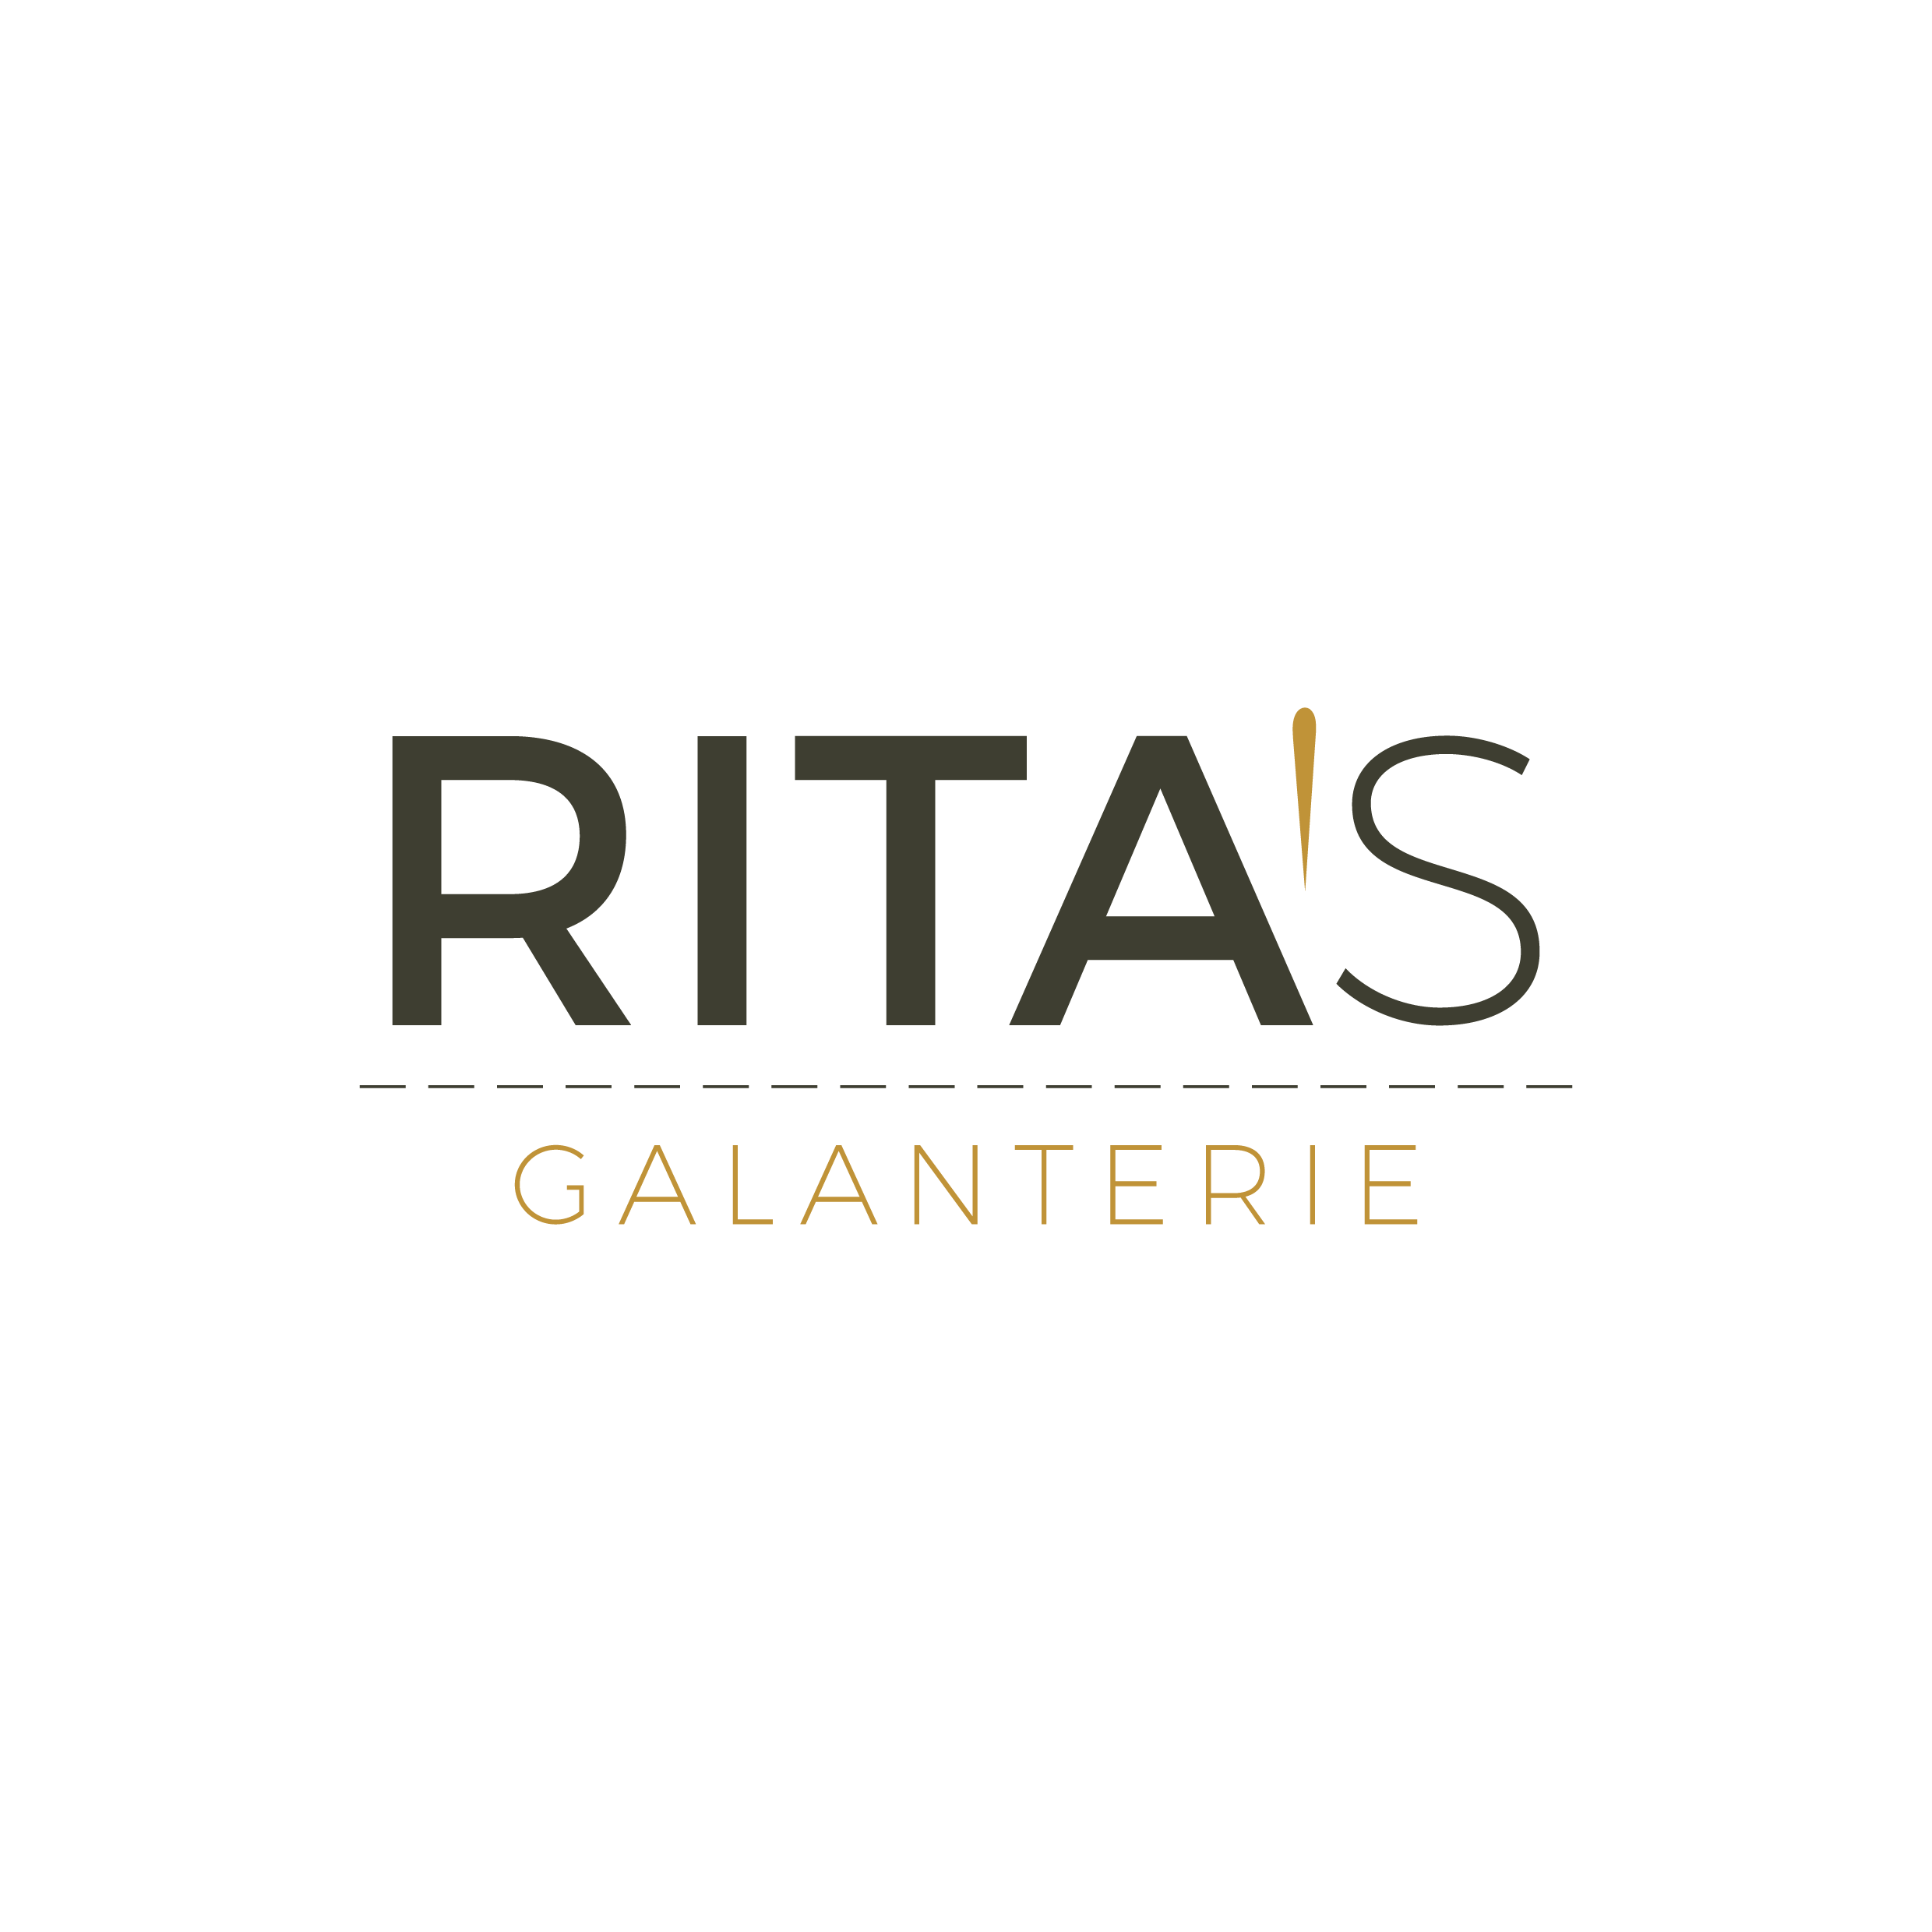 Rita's galantery